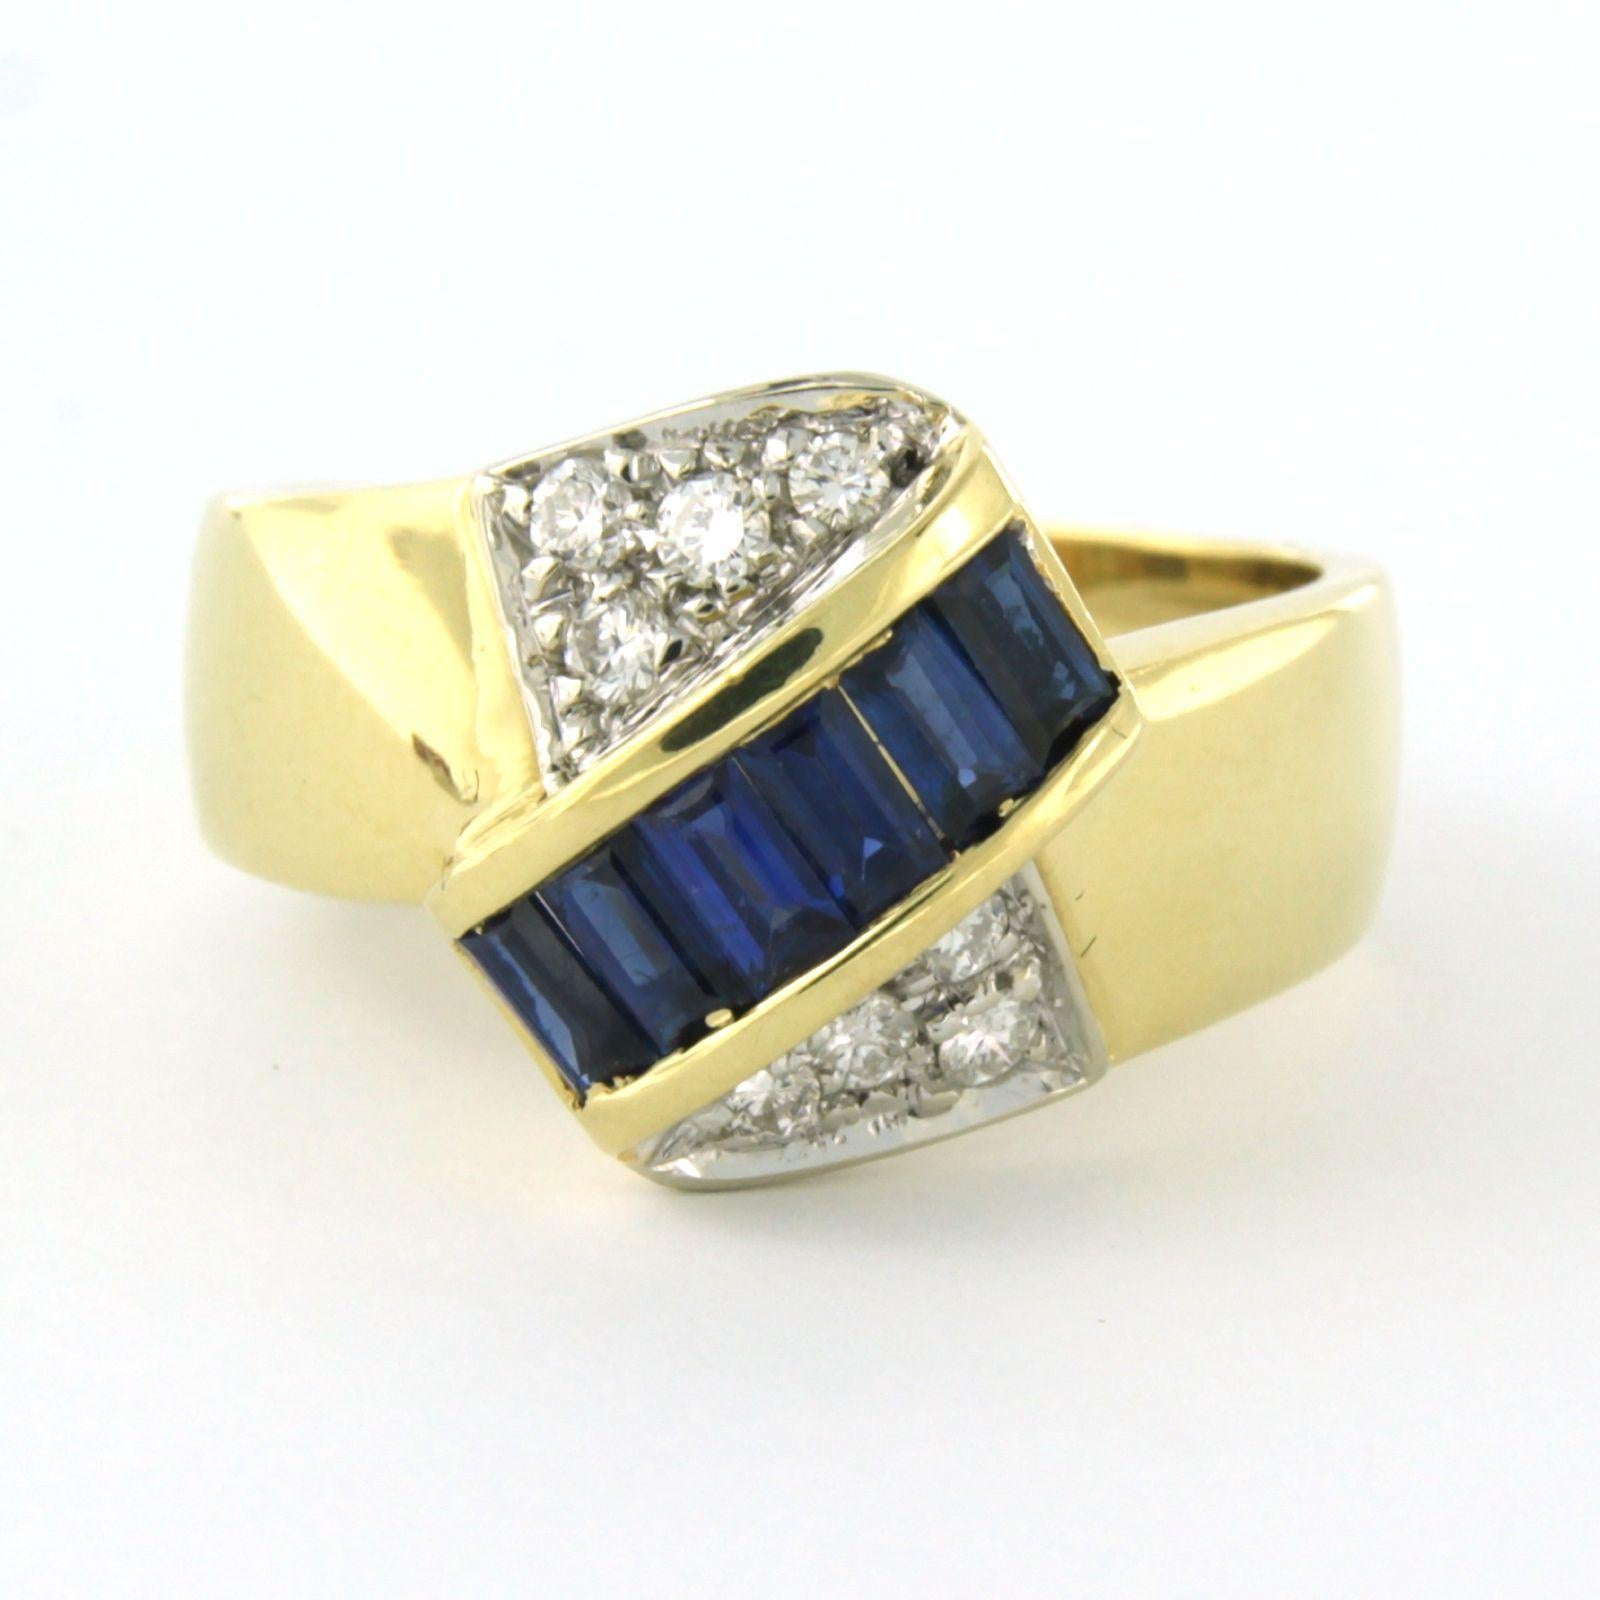 LEO PIZZO - Ring aus 18 kt Bicolor-Gold, besetzt mit einem Saphir von insgesamt 1,00 ct und einem Diamanten mit Brillantschliff von insgesamt 0,35 ct - F - VS - Ringgröße U.S. 8 - EU. 18(57)

ausführliche Beschreibung

die Oberseite des Rings ist